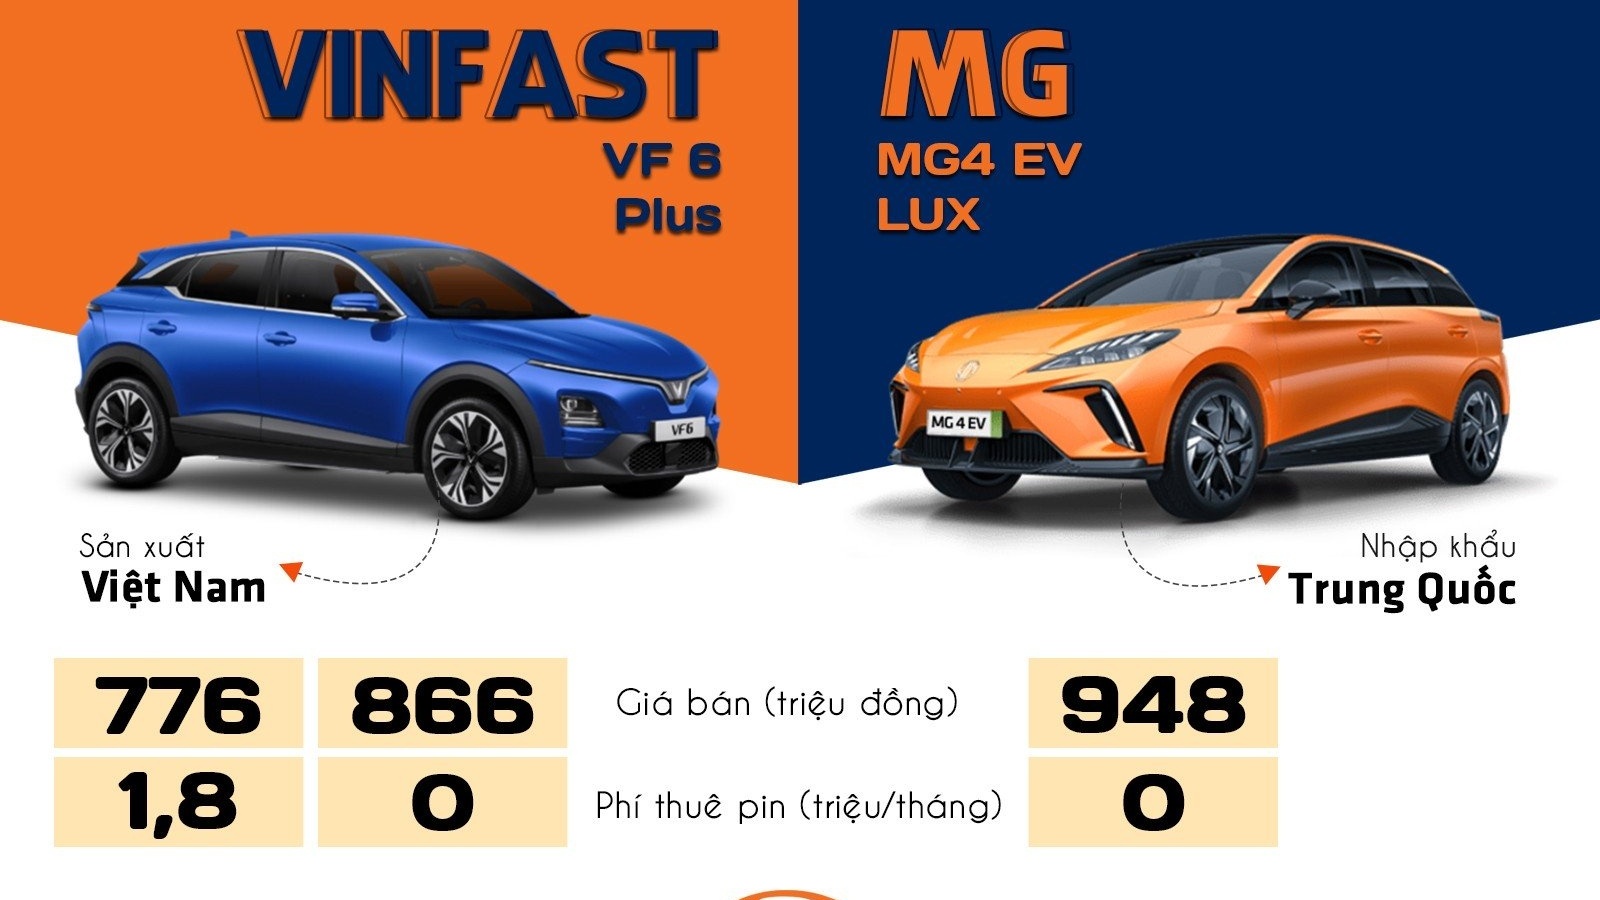 Nên chọn xe điện MG4 EV Lux hay VinFast VF 6 Plus?